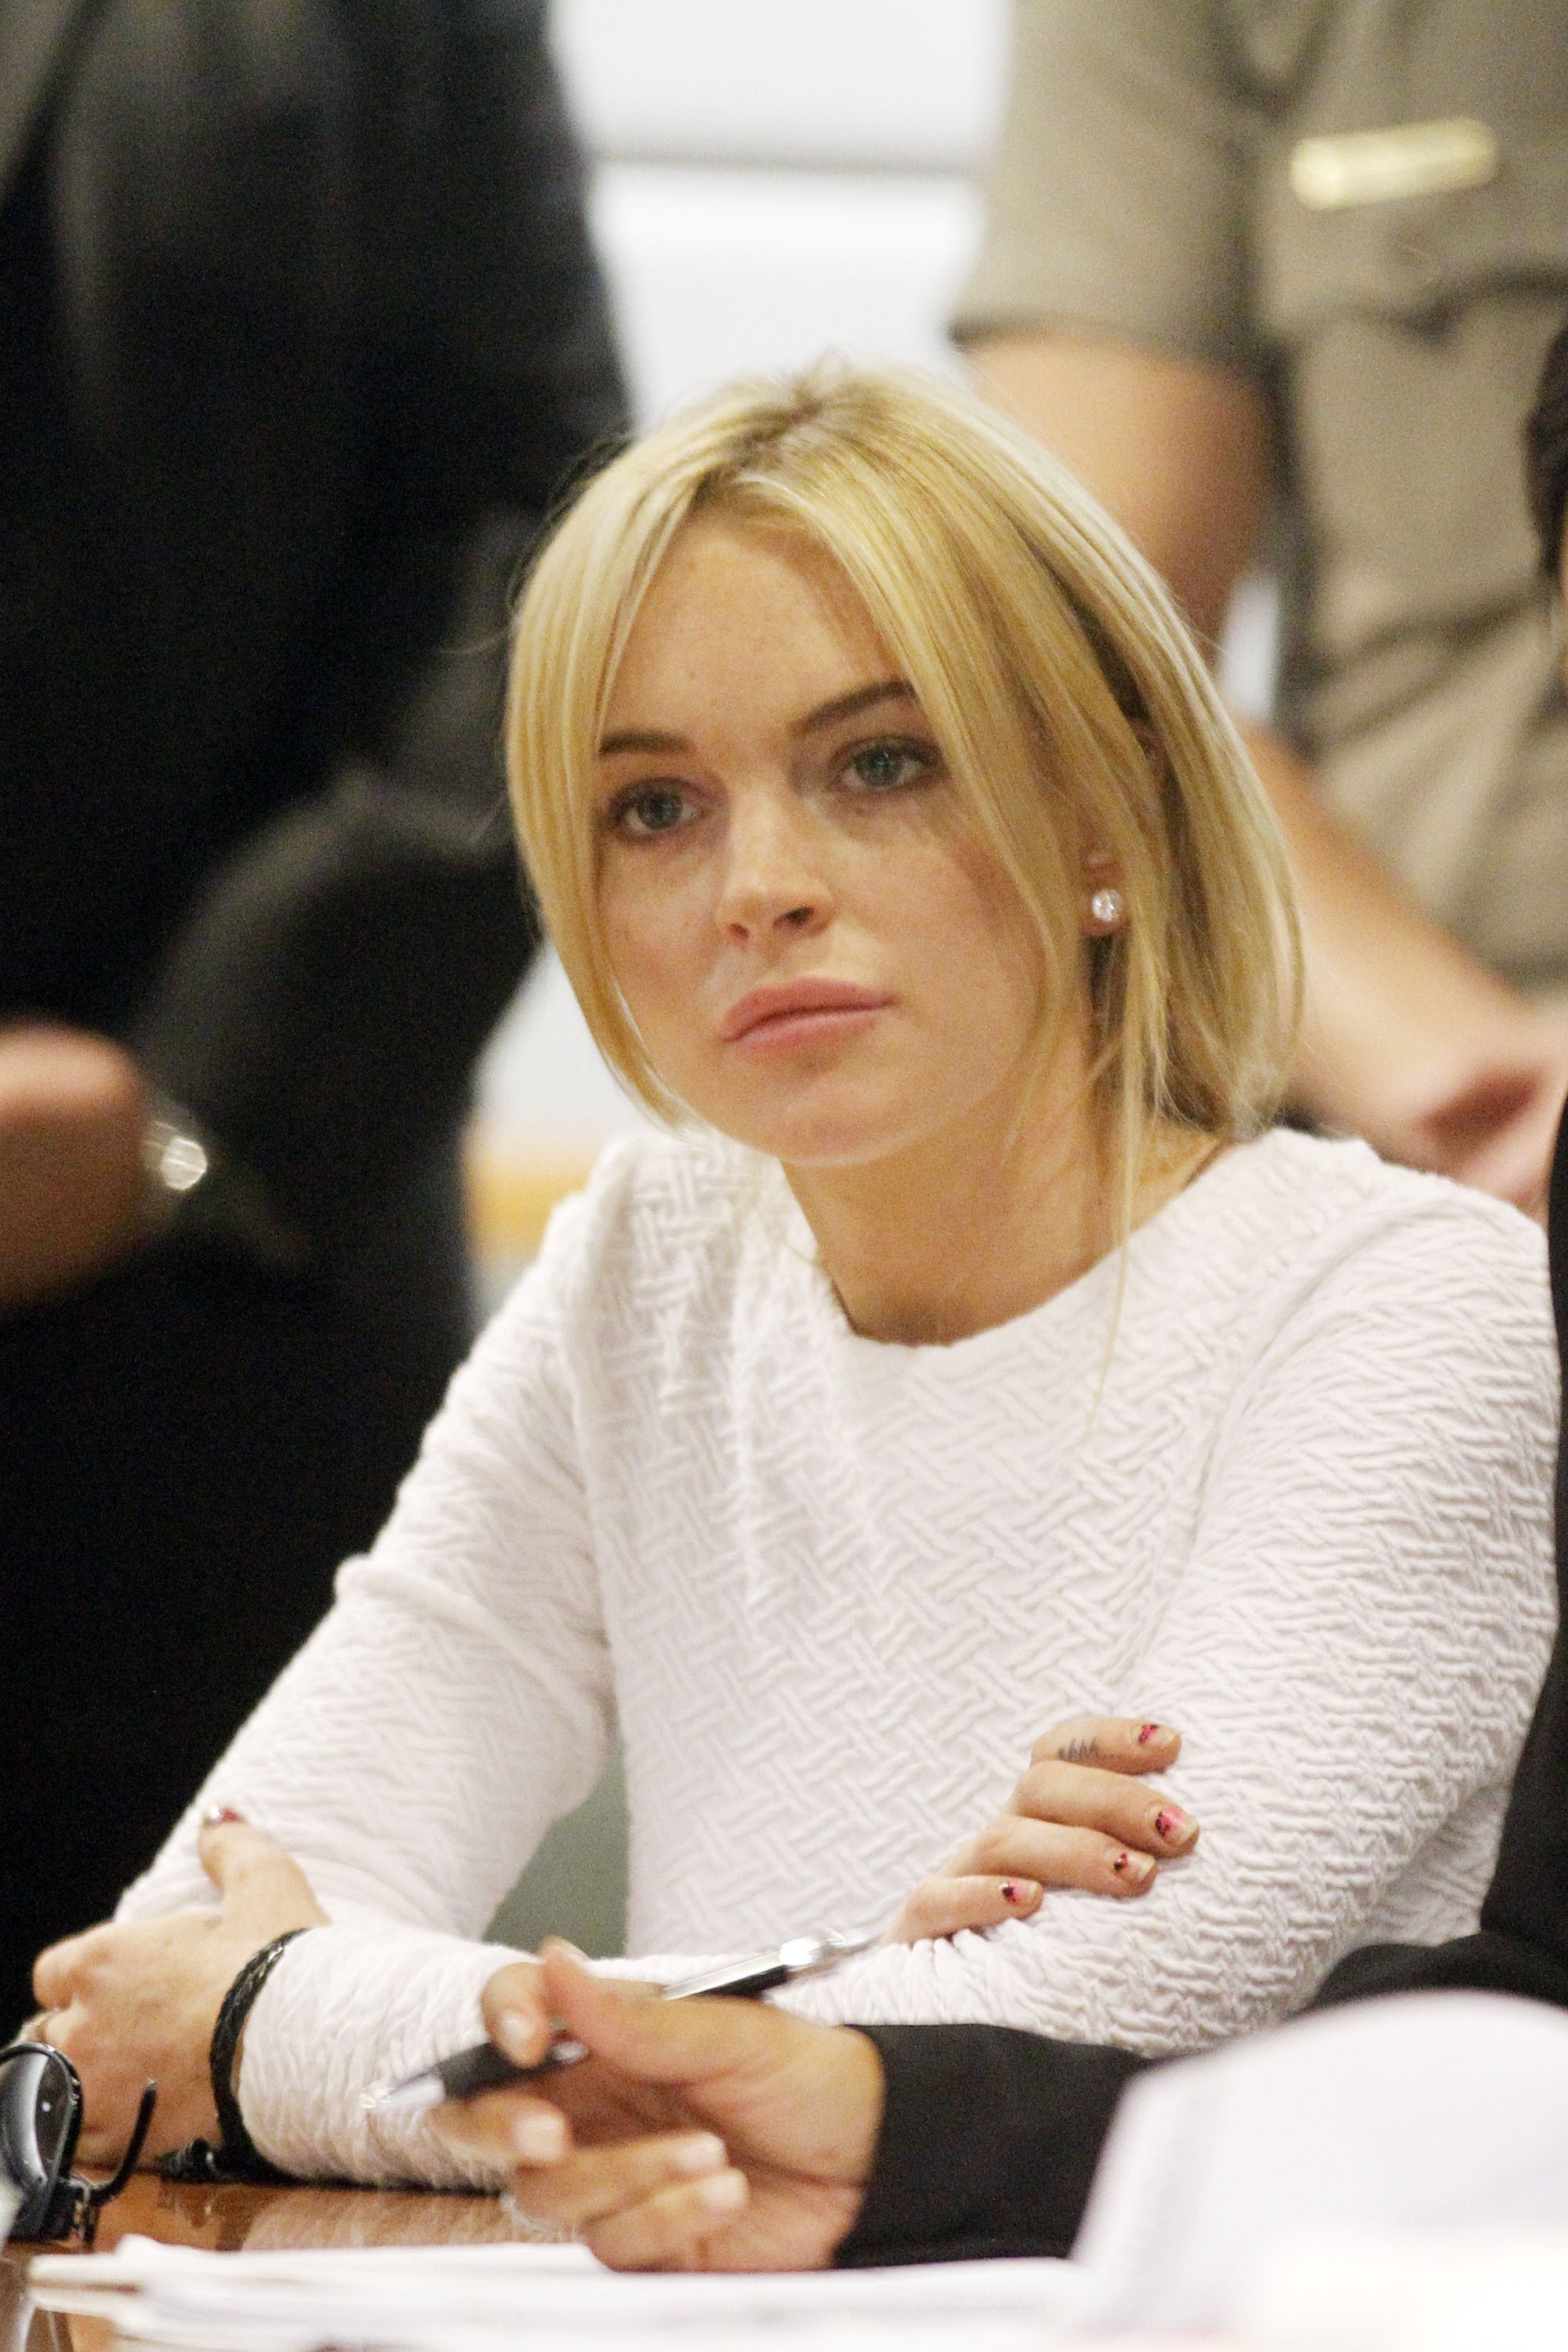 Lindsay Lohan bröt mot reglerna under sin husarrest och drack alkohol. Hon tvingades då till ytterligare en rättegång.